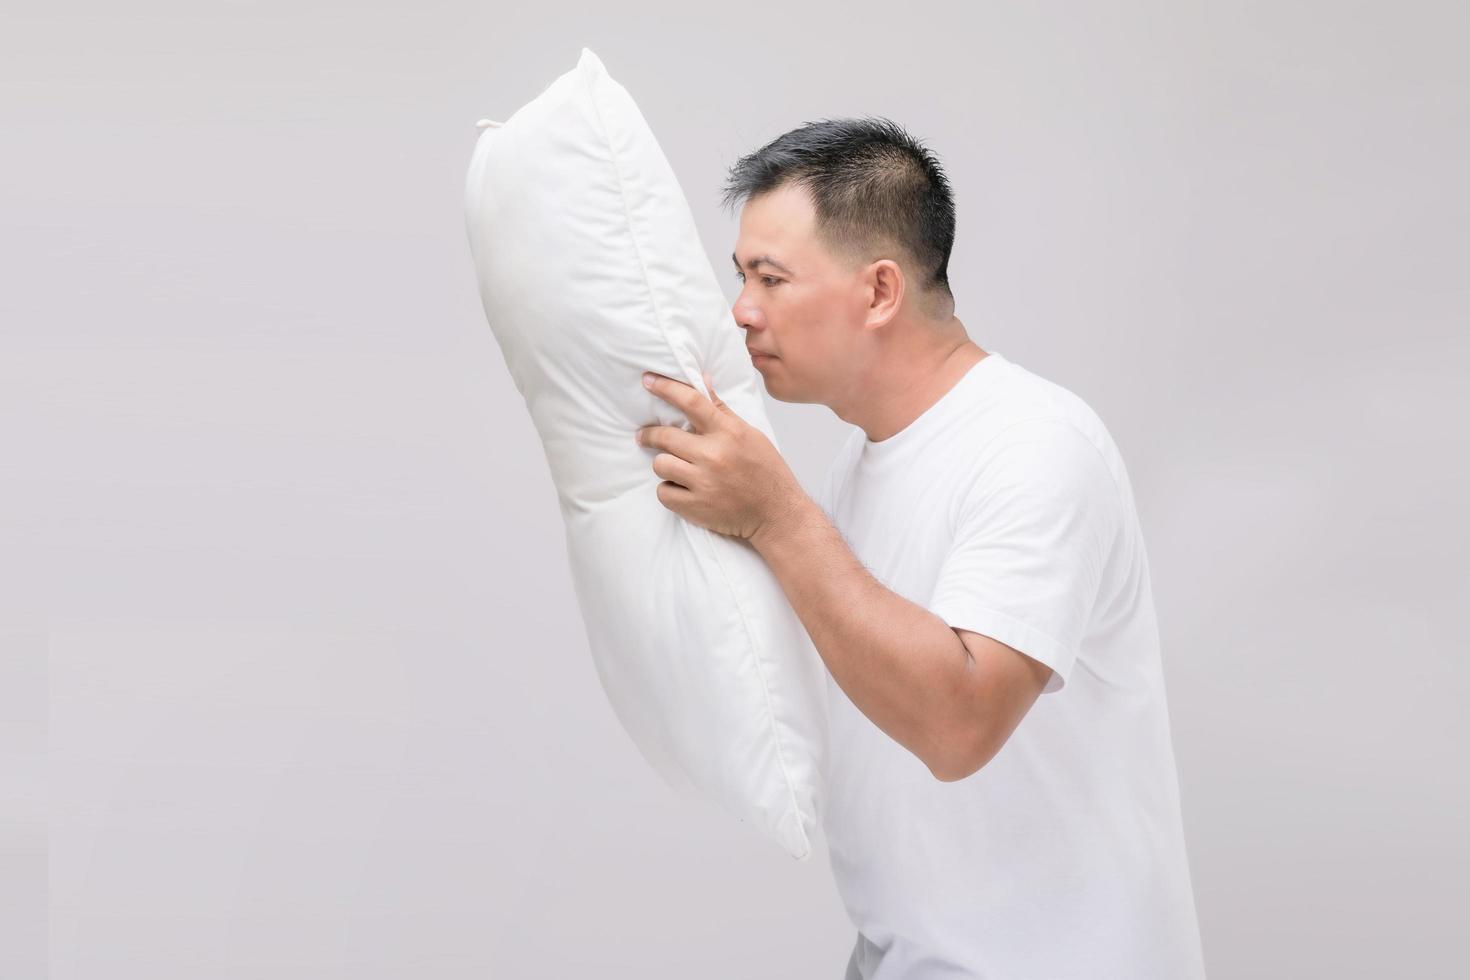 l'oreiller sent mauvais. portrait homme asiatique tenant un oreiller blanc et ayant une mauvaise odeur. tourné en studio sur gris photo